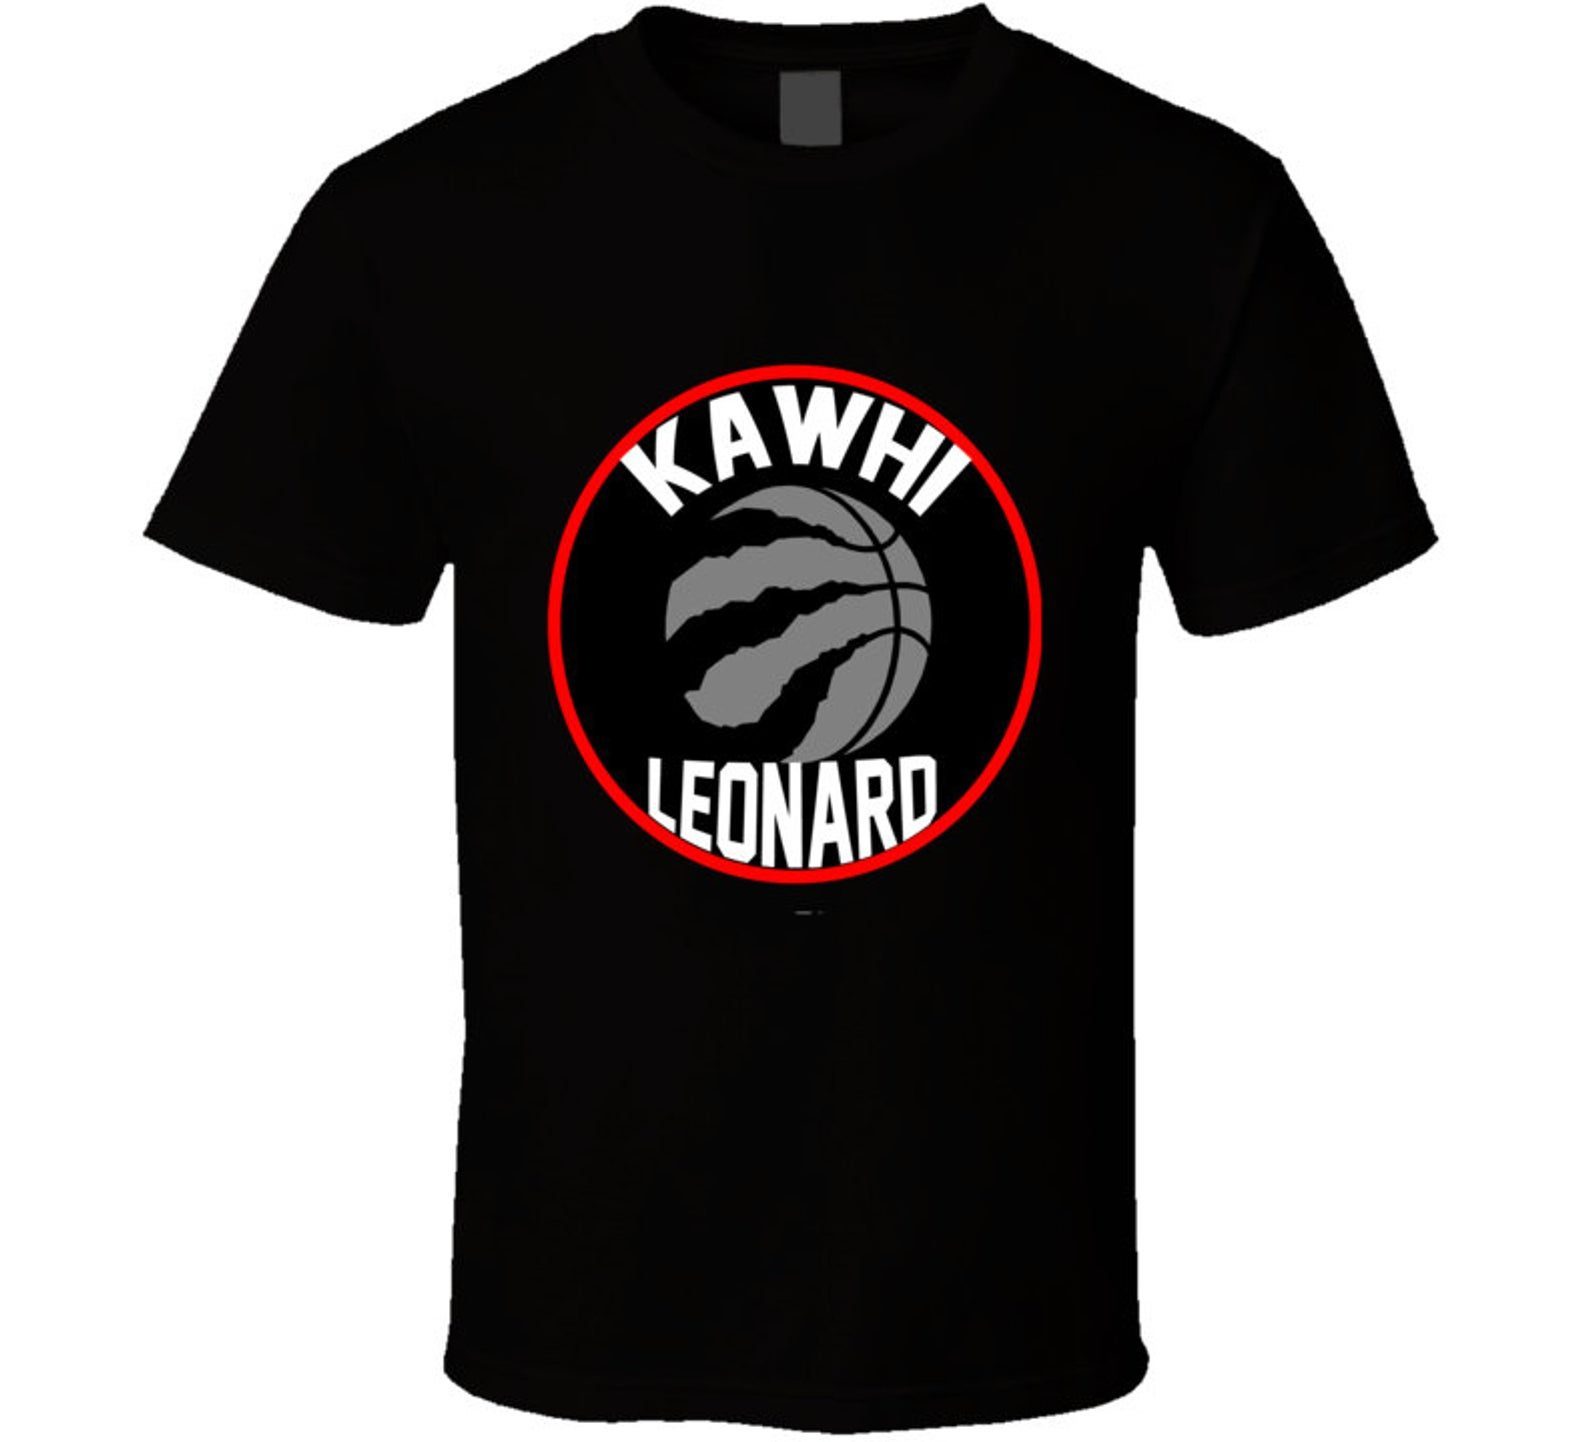 Kawhi Leonard Toronto Raptors Basketball Player T Shirt